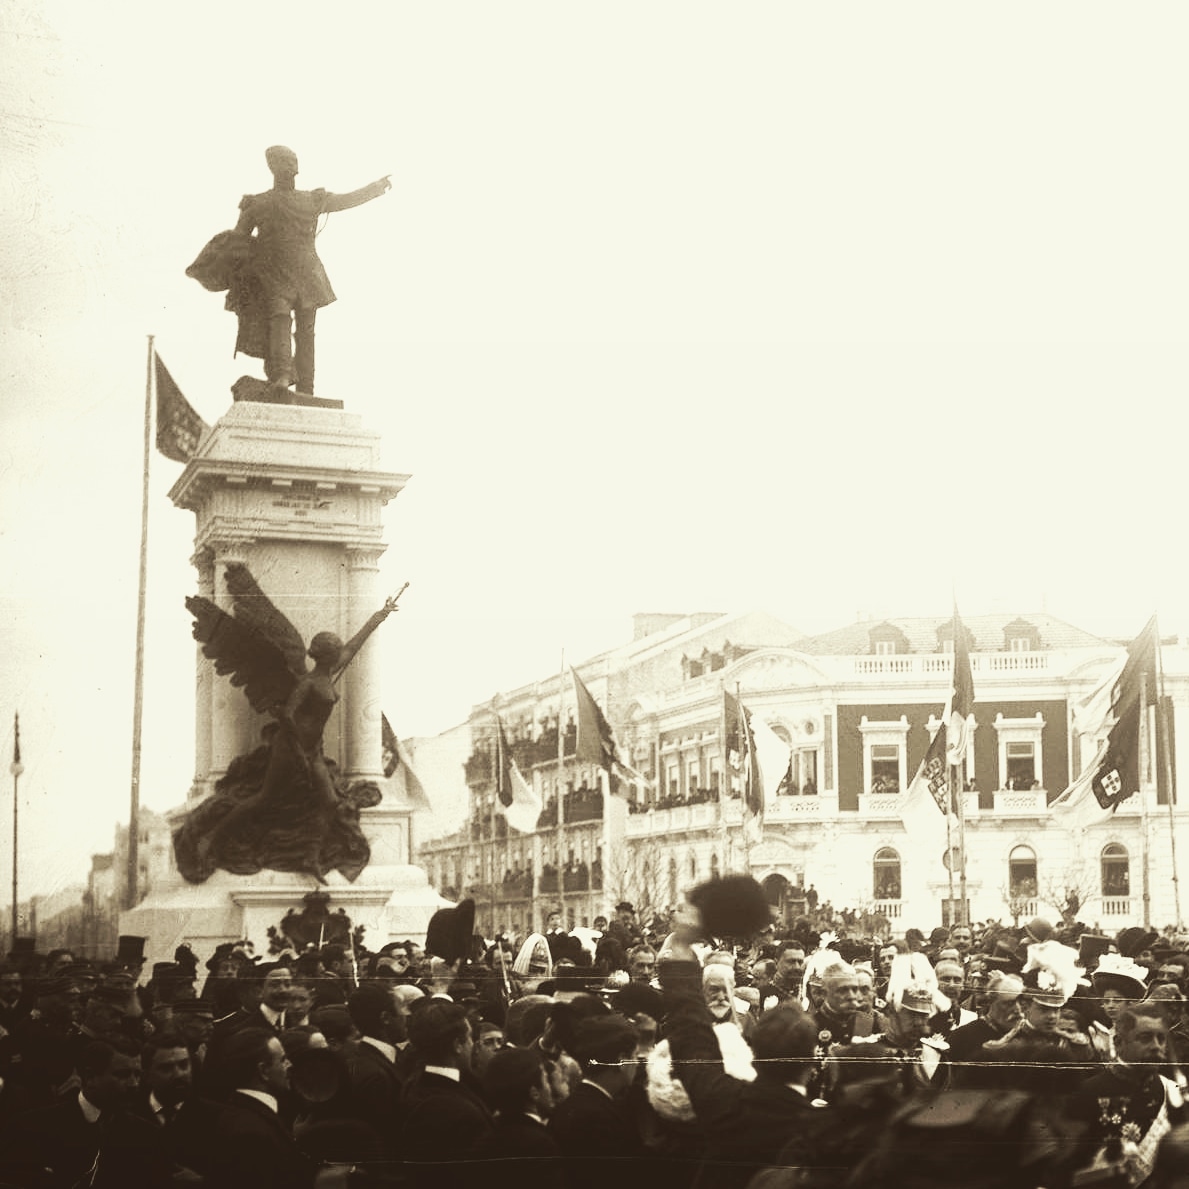 RT @ArquivoMTD: Inauguração da #estátua do Duque de #Saldanha, na praça com o seu nome, em #1909. #História das #Avenidas em #LisboaDesaparecida de #MarinaTavaresDias.  #post: #MTDArchives.